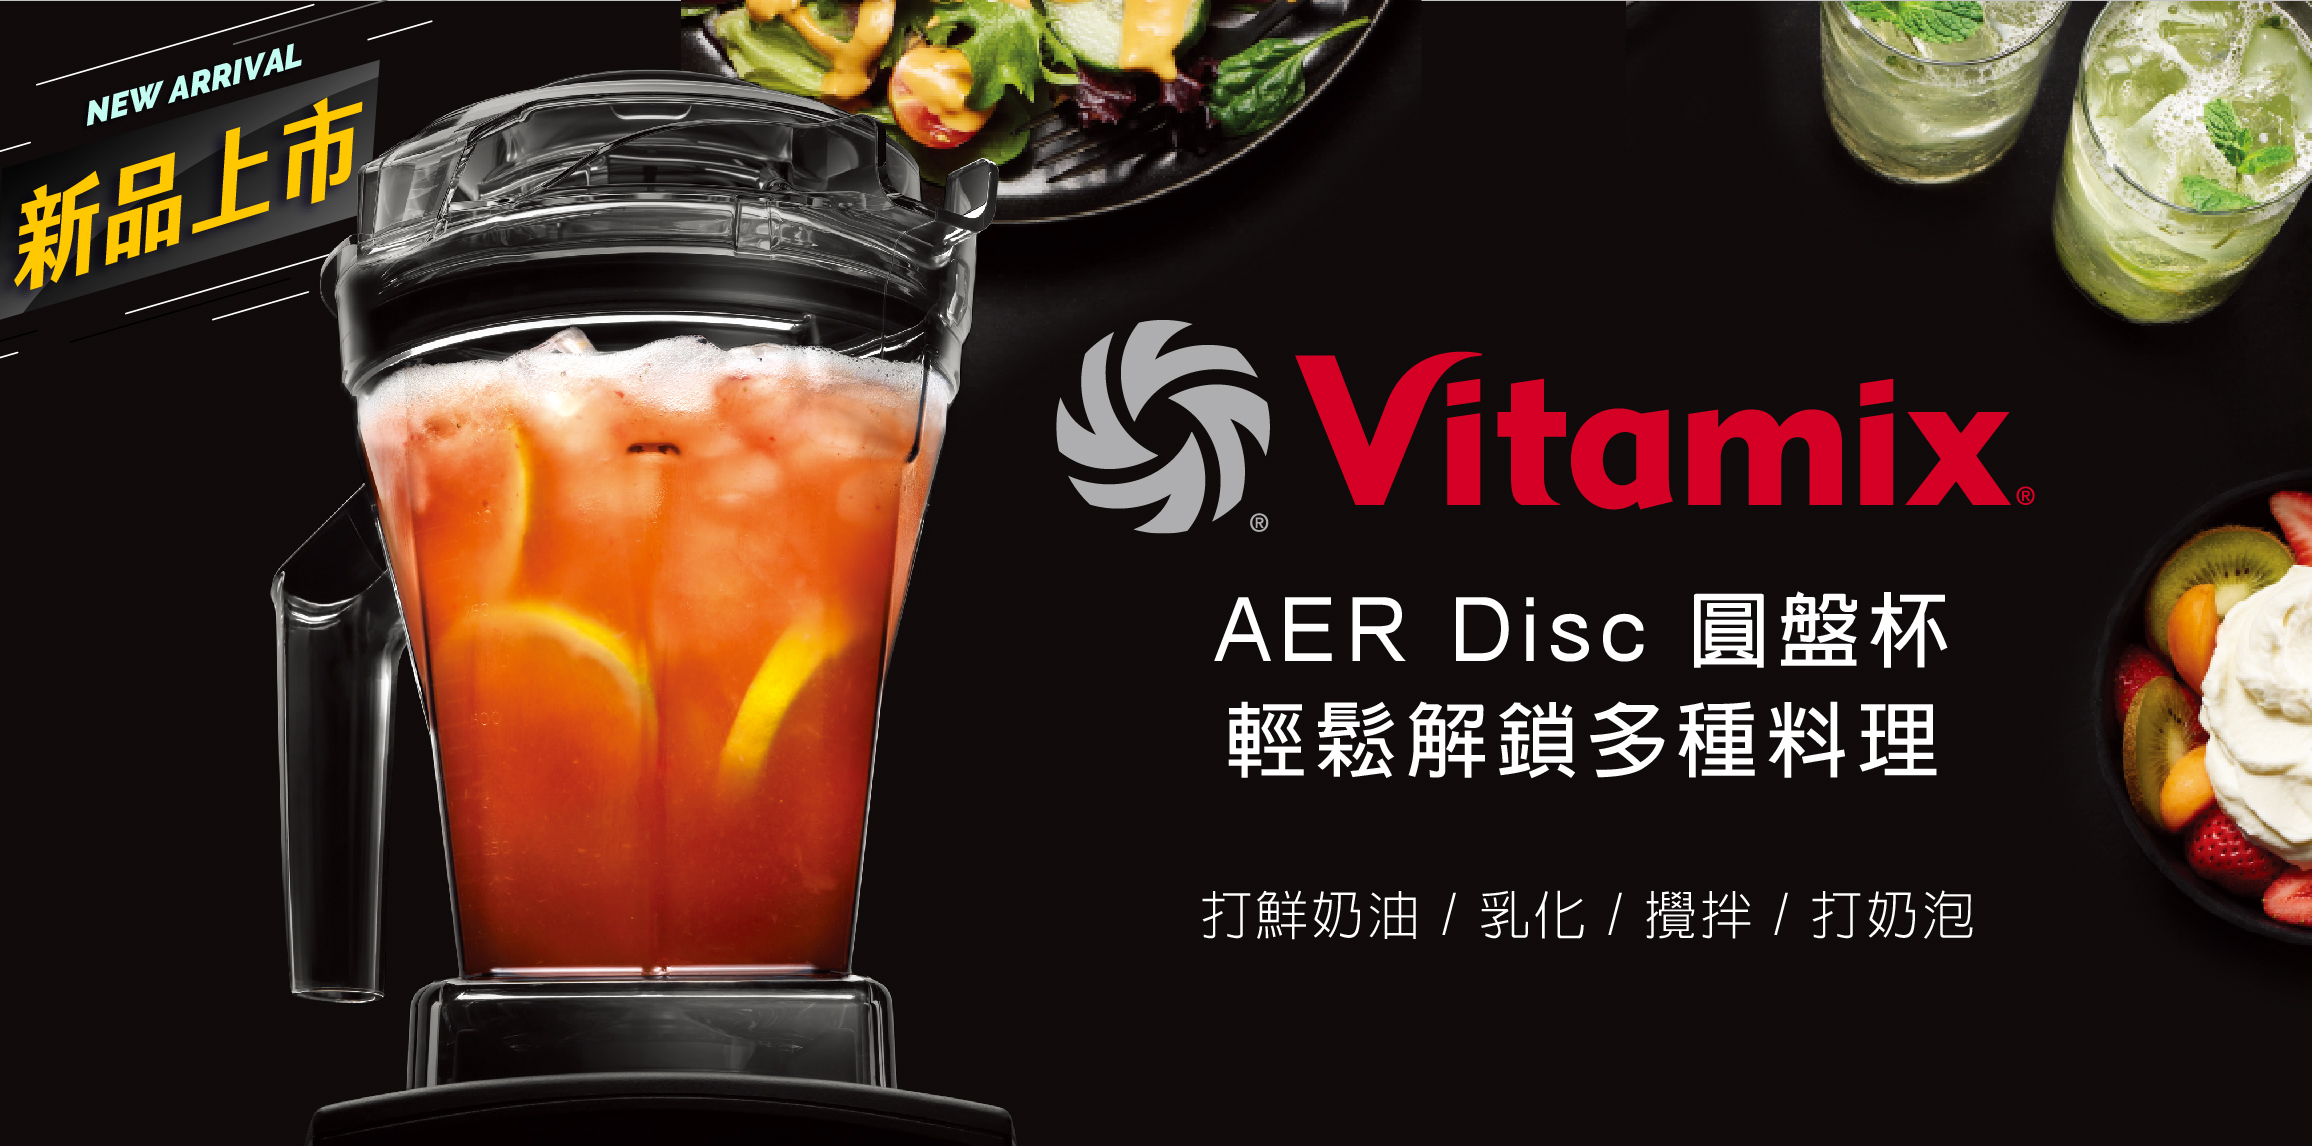 大侑-dietu-食譜-料理分享-Vitamix-A3500i超跑級調理機-陳月卿-養生達人-新品上市-容杯-Aer Disc